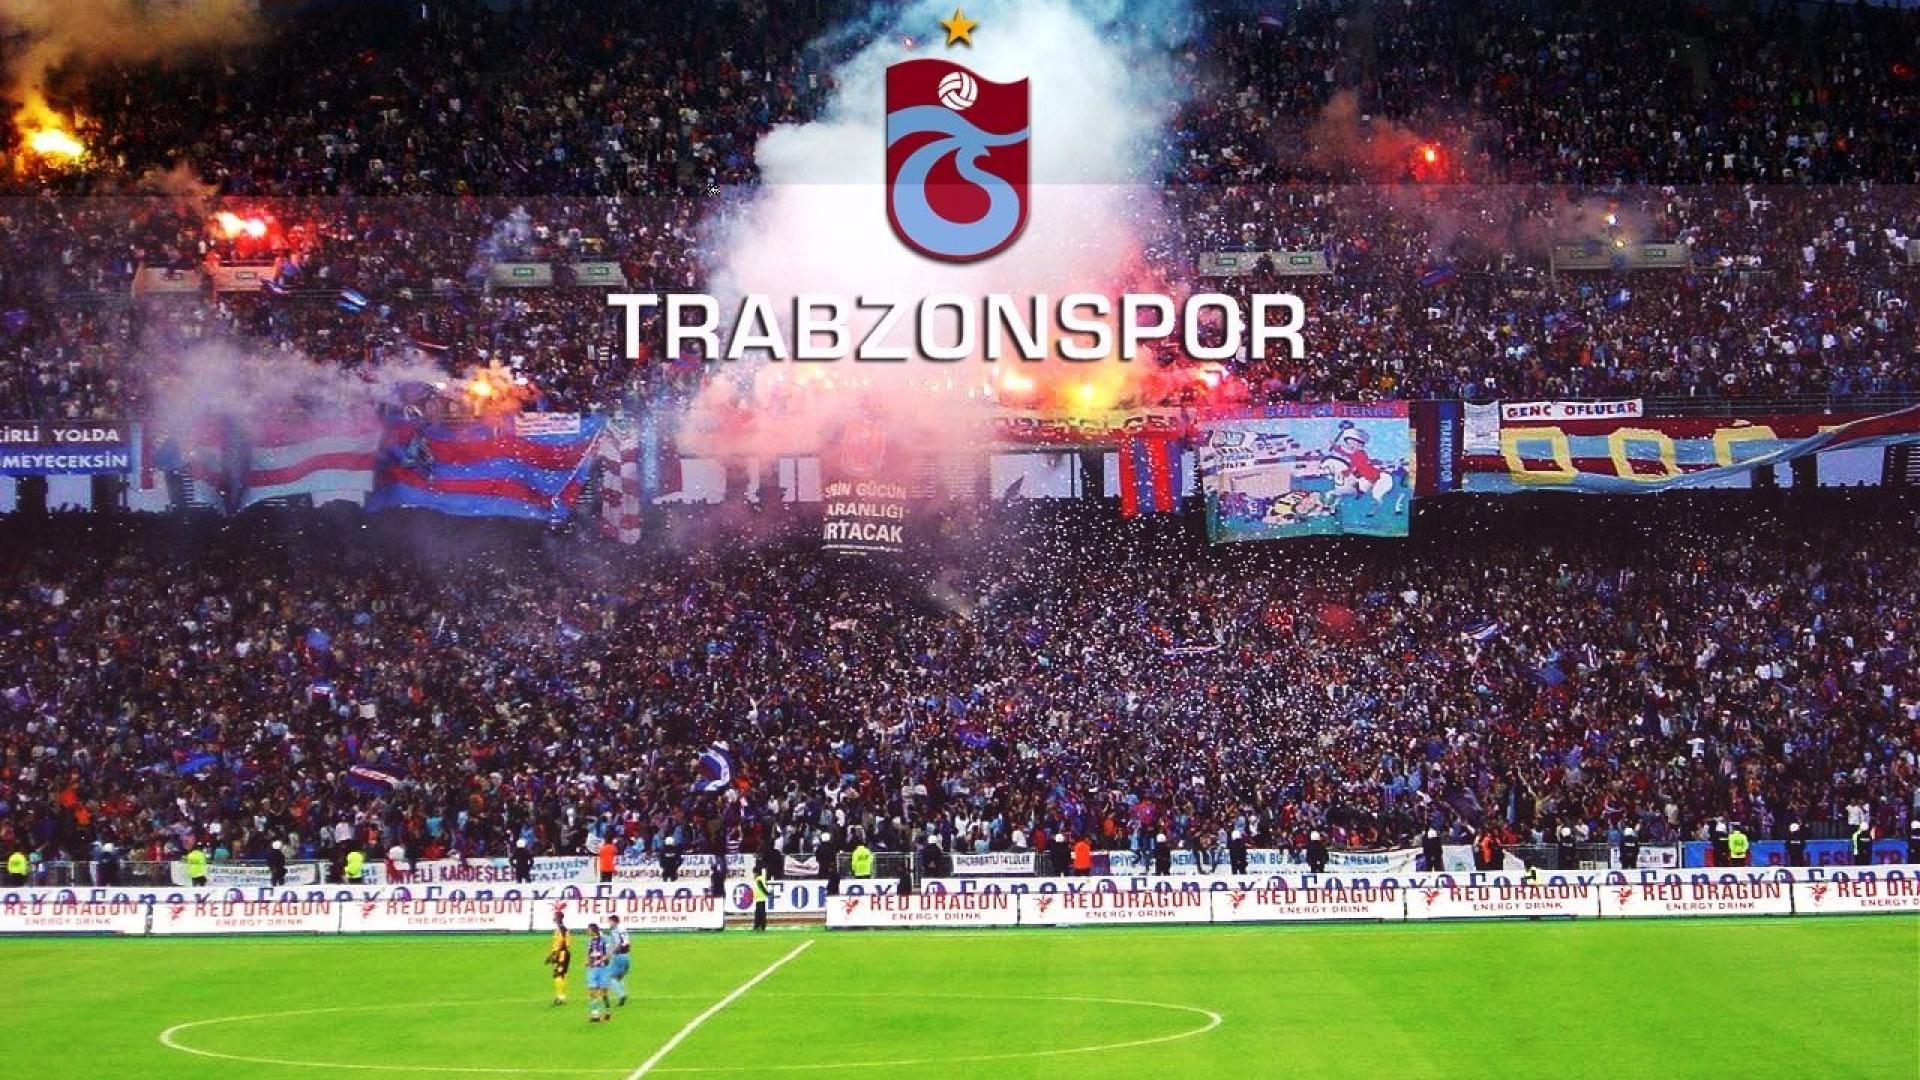 trabzonspor wallpaper,sport venue,stadium,fan,product,soccer specific stadium